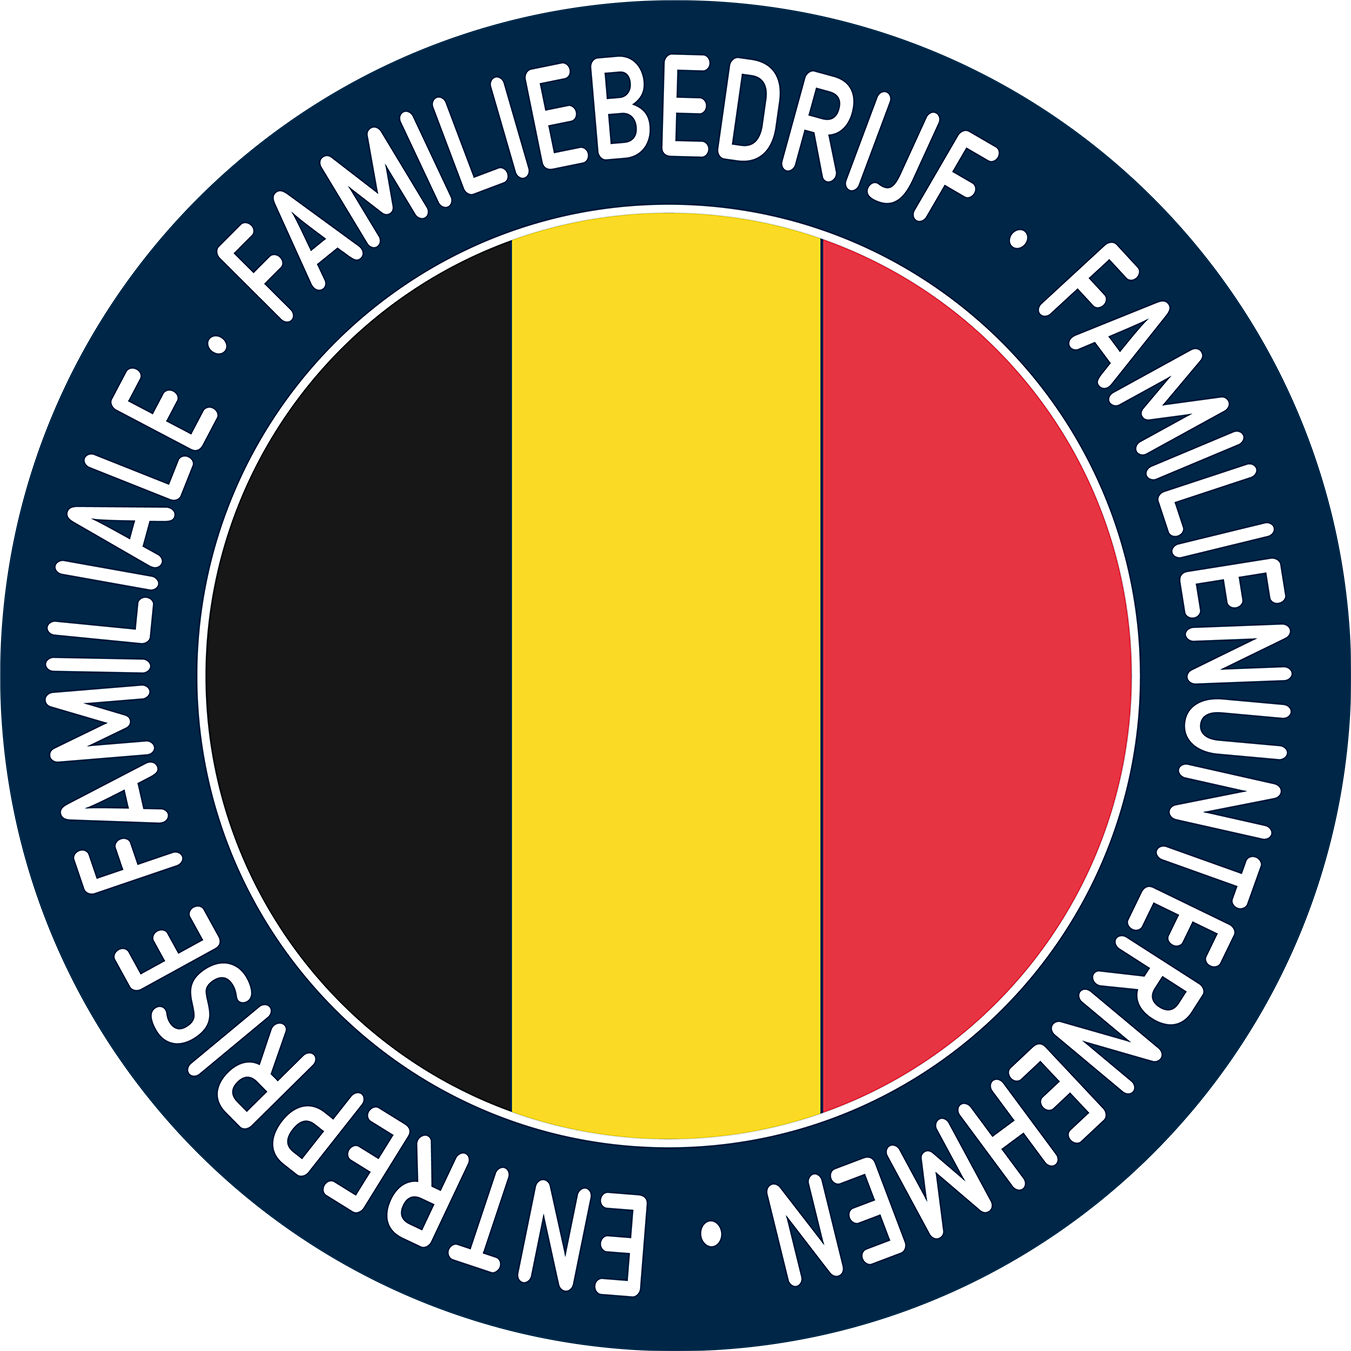 Belgium company